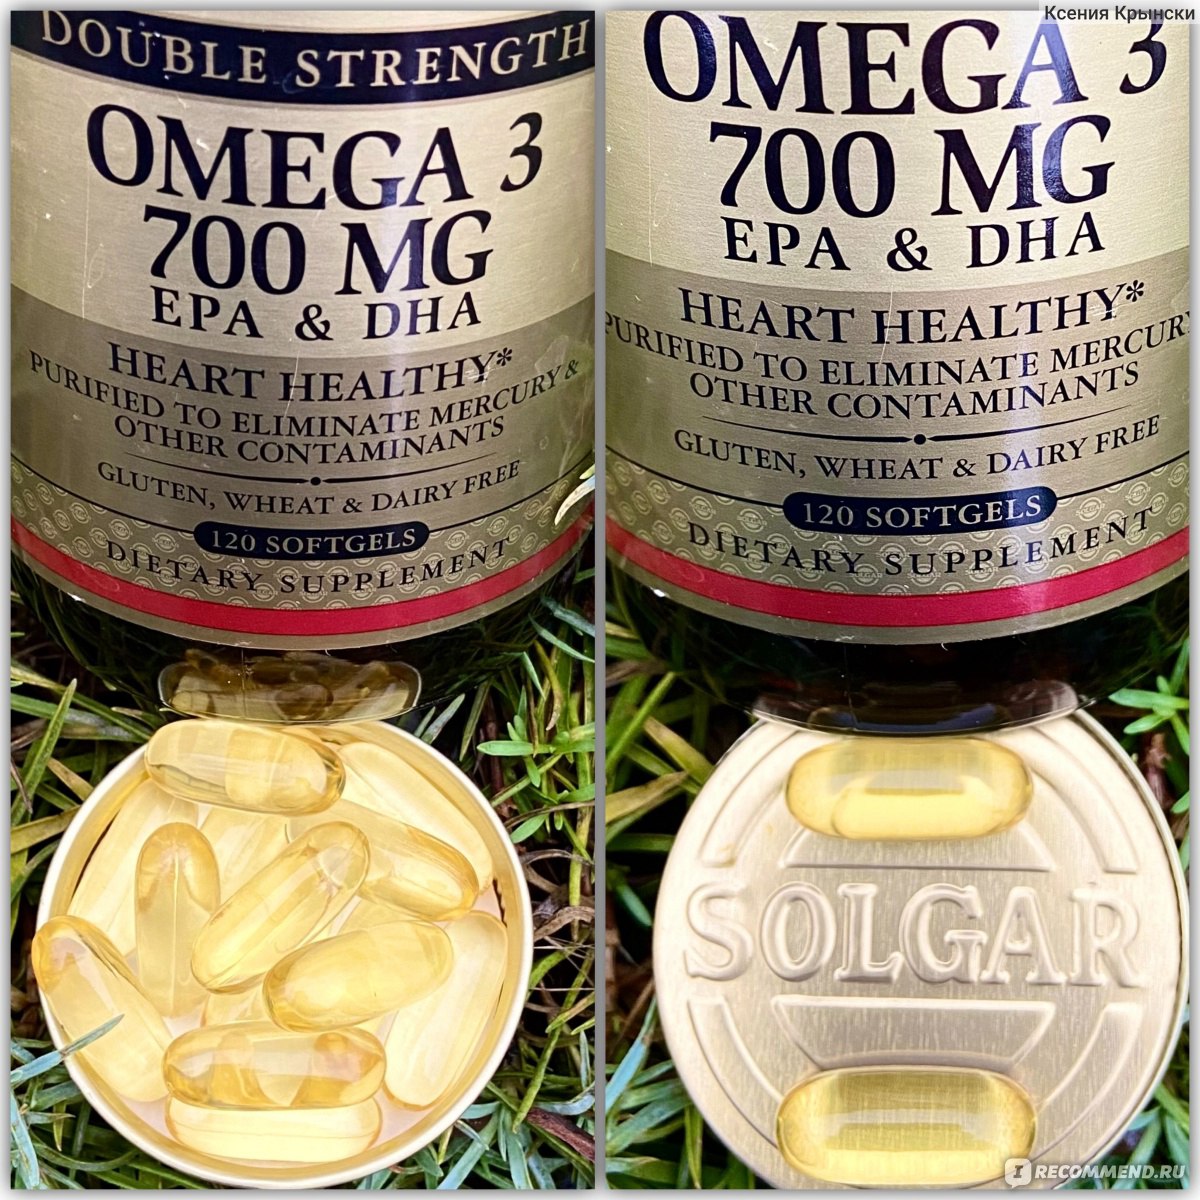 Двойная Омега Solgar Omega-3 EPA & DHA Double Strength 700 mg, отзывы